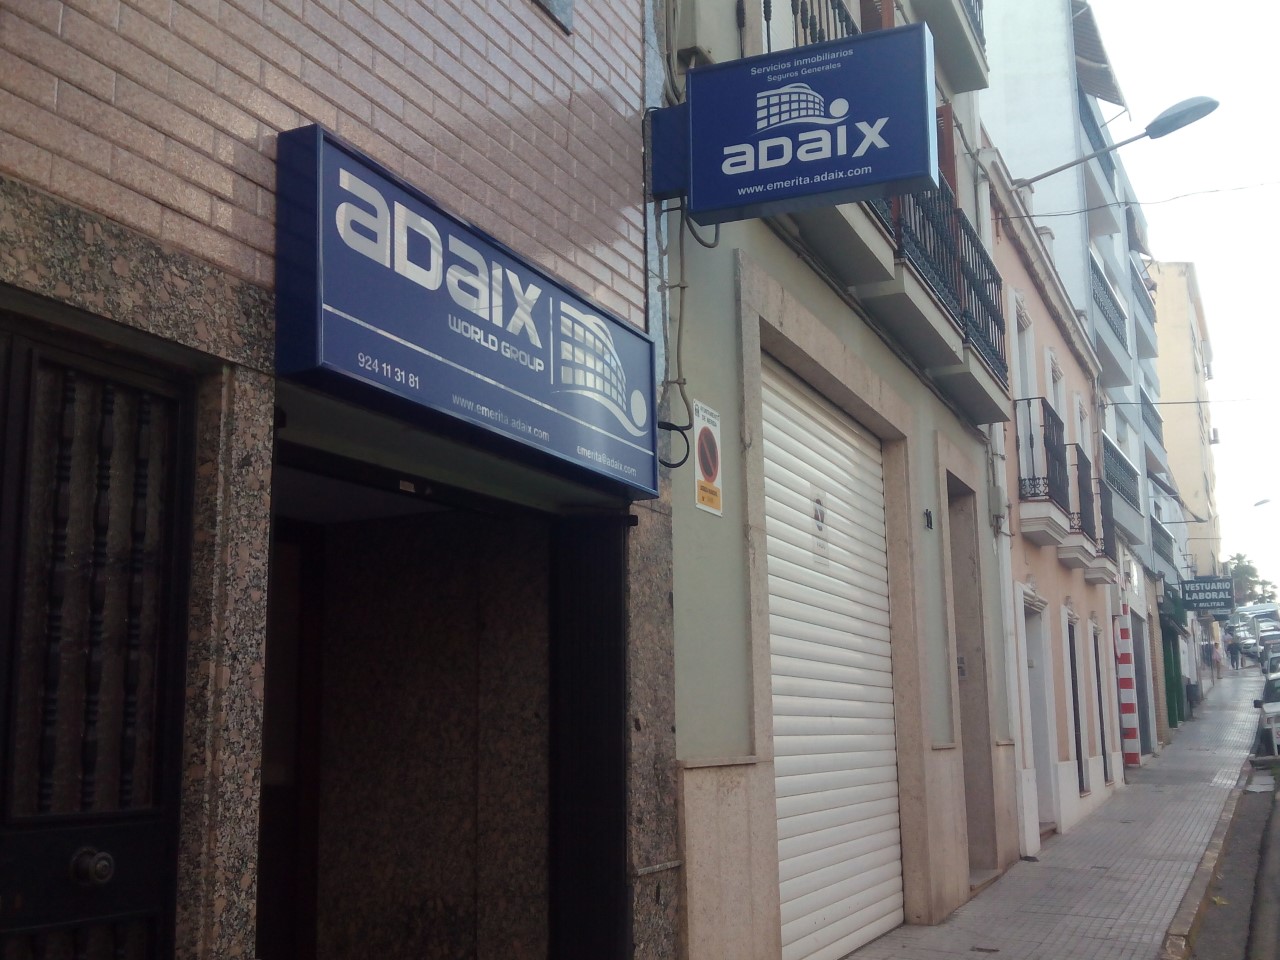 Adaix Emerita llega a la ciudad de Mérida para añadirle más valor a la ciudad